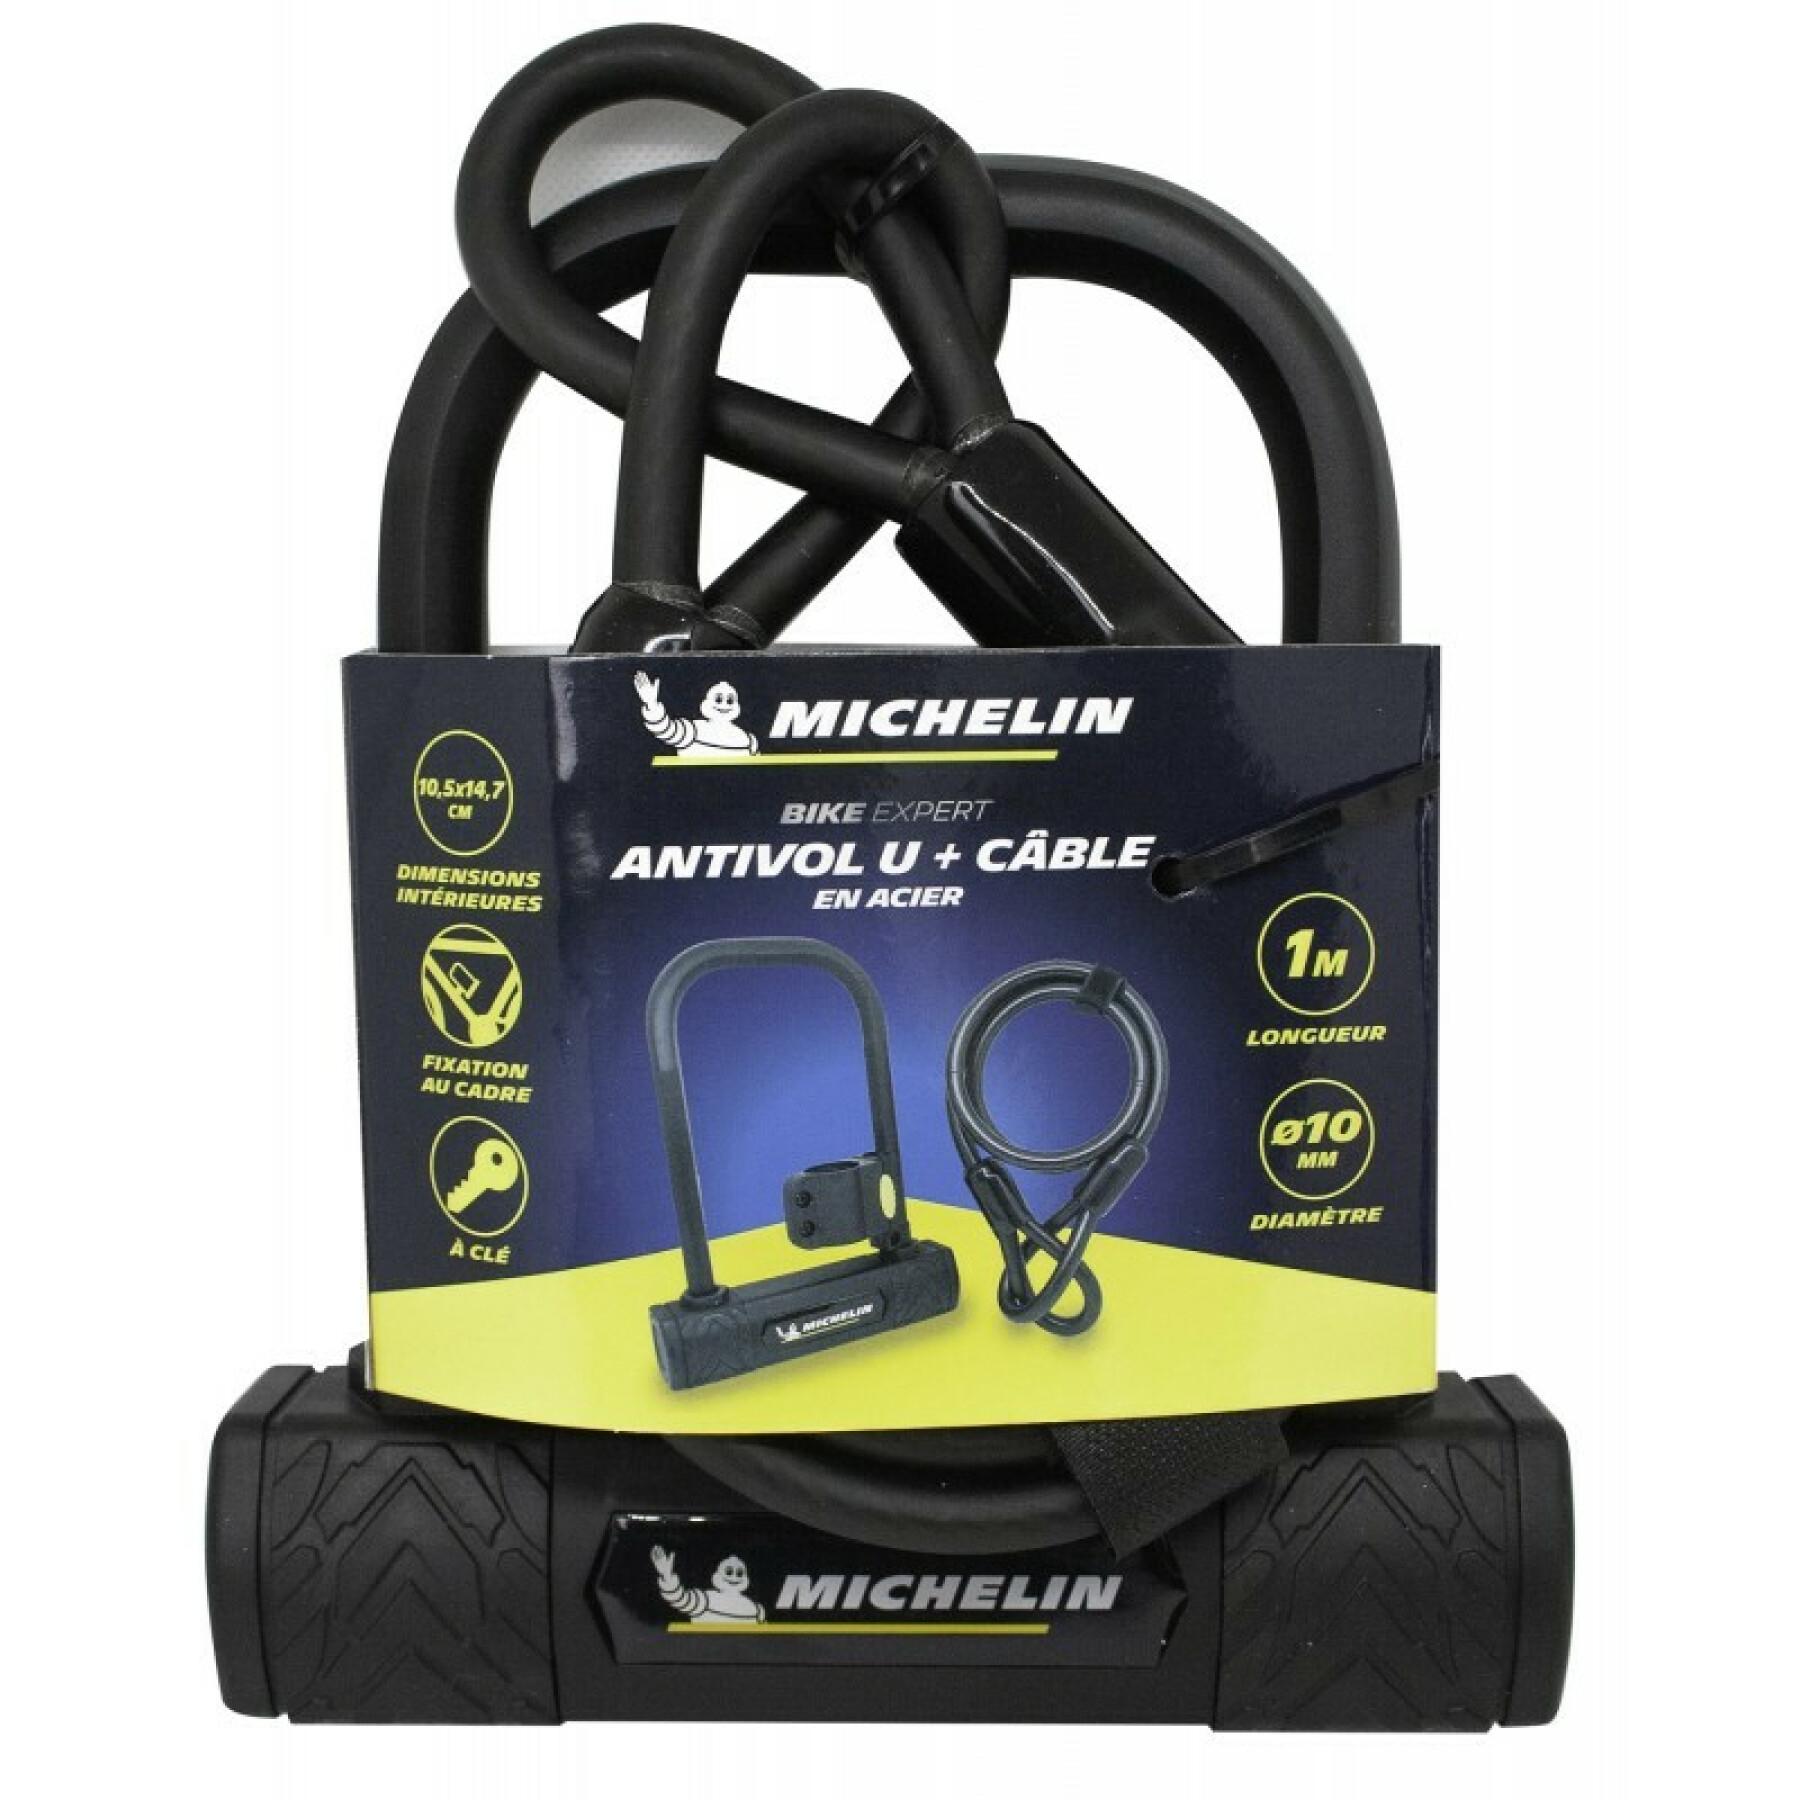 Dispositivo anti-roubo u 147 + cabo Michelin 1m